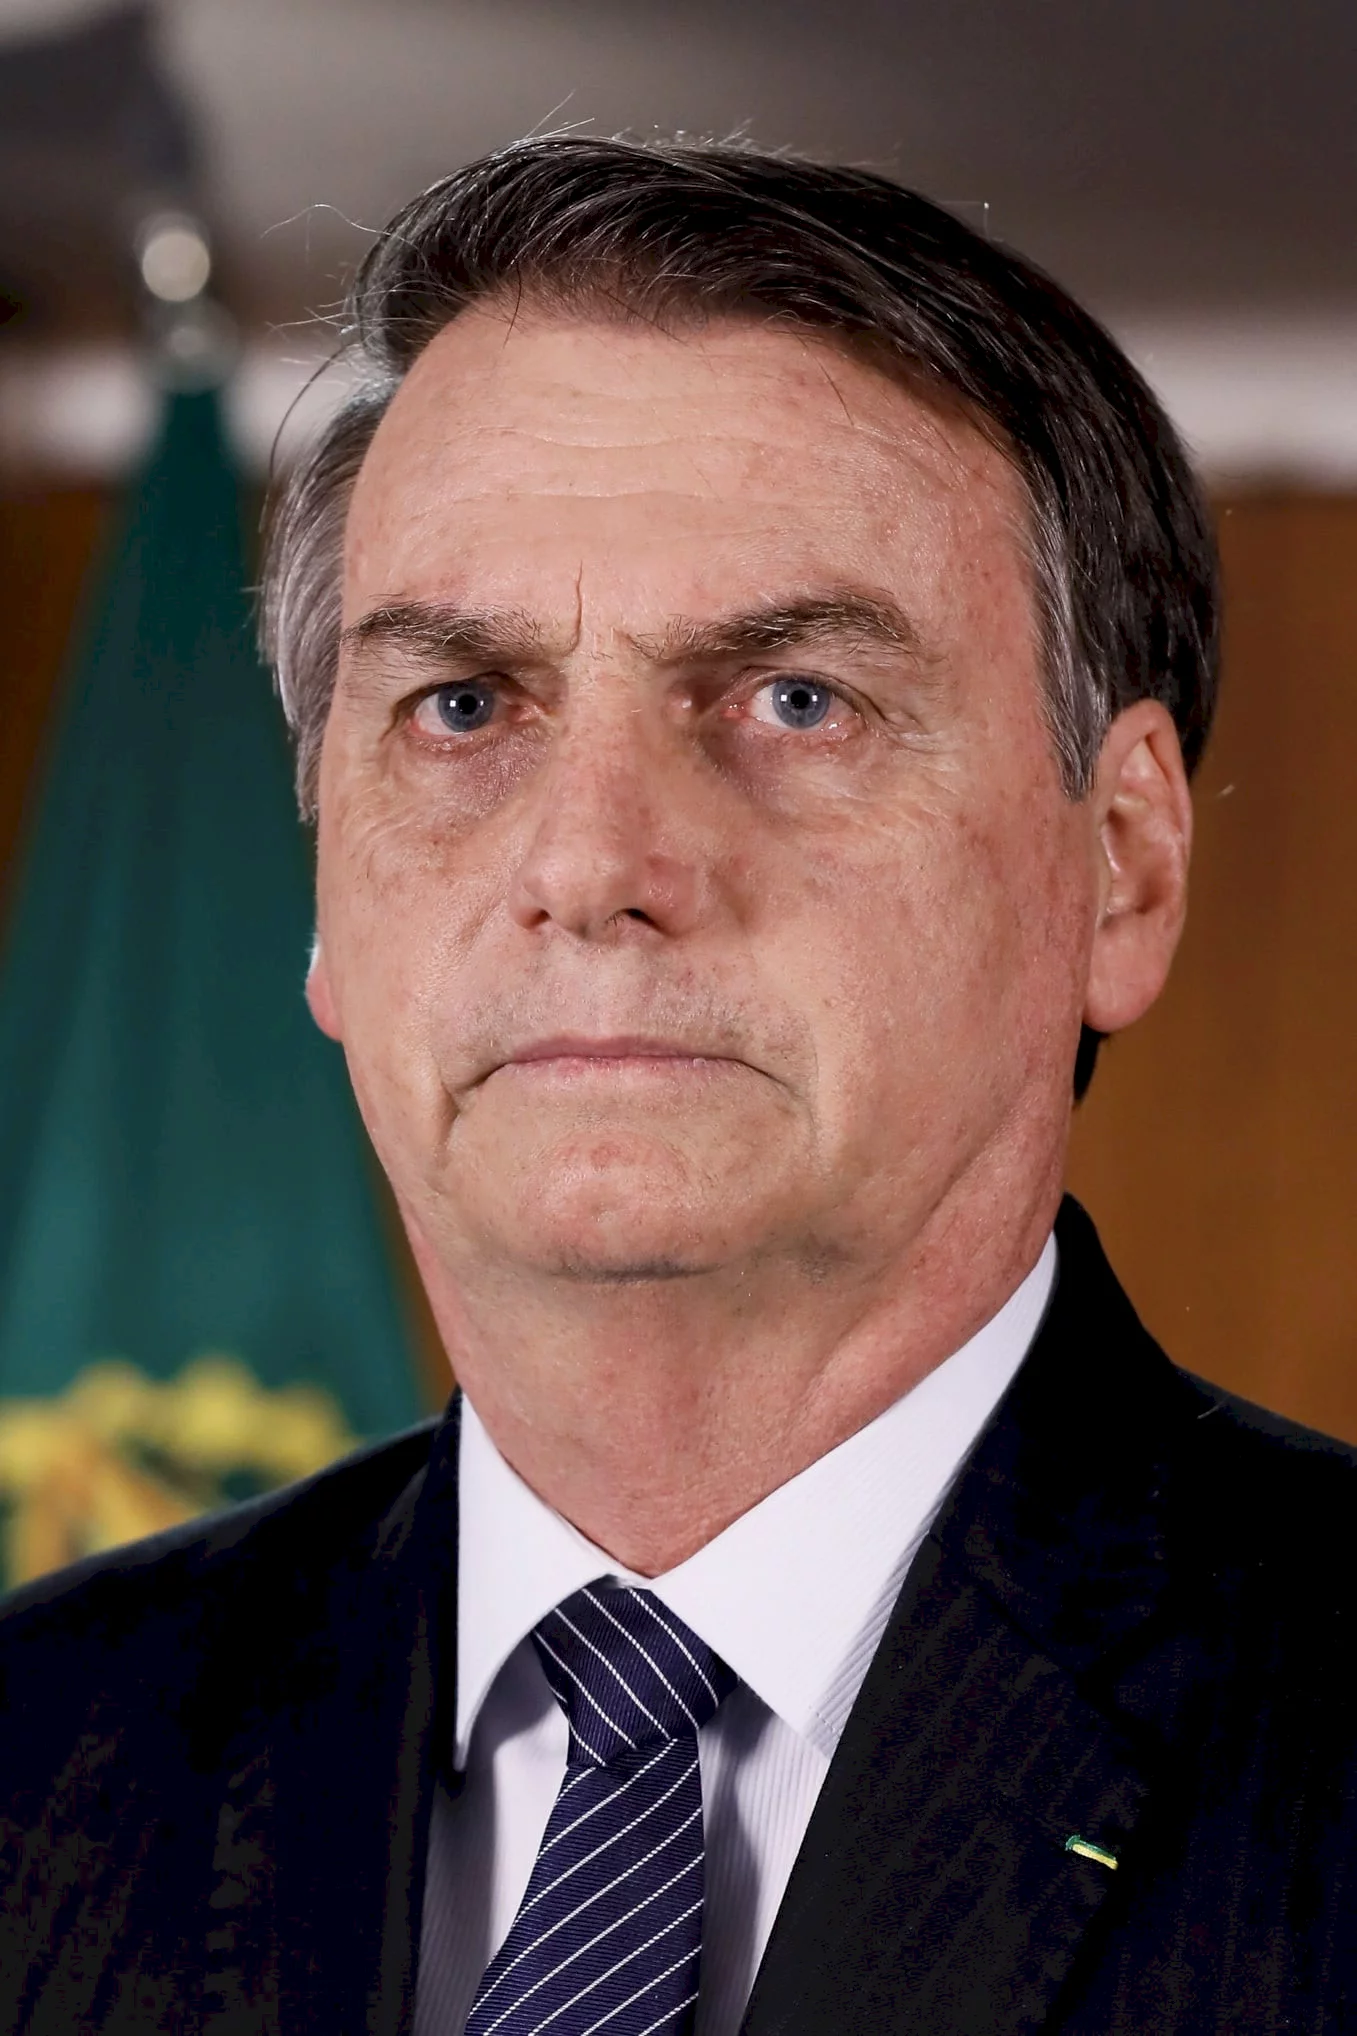  Jair Bolsonaro